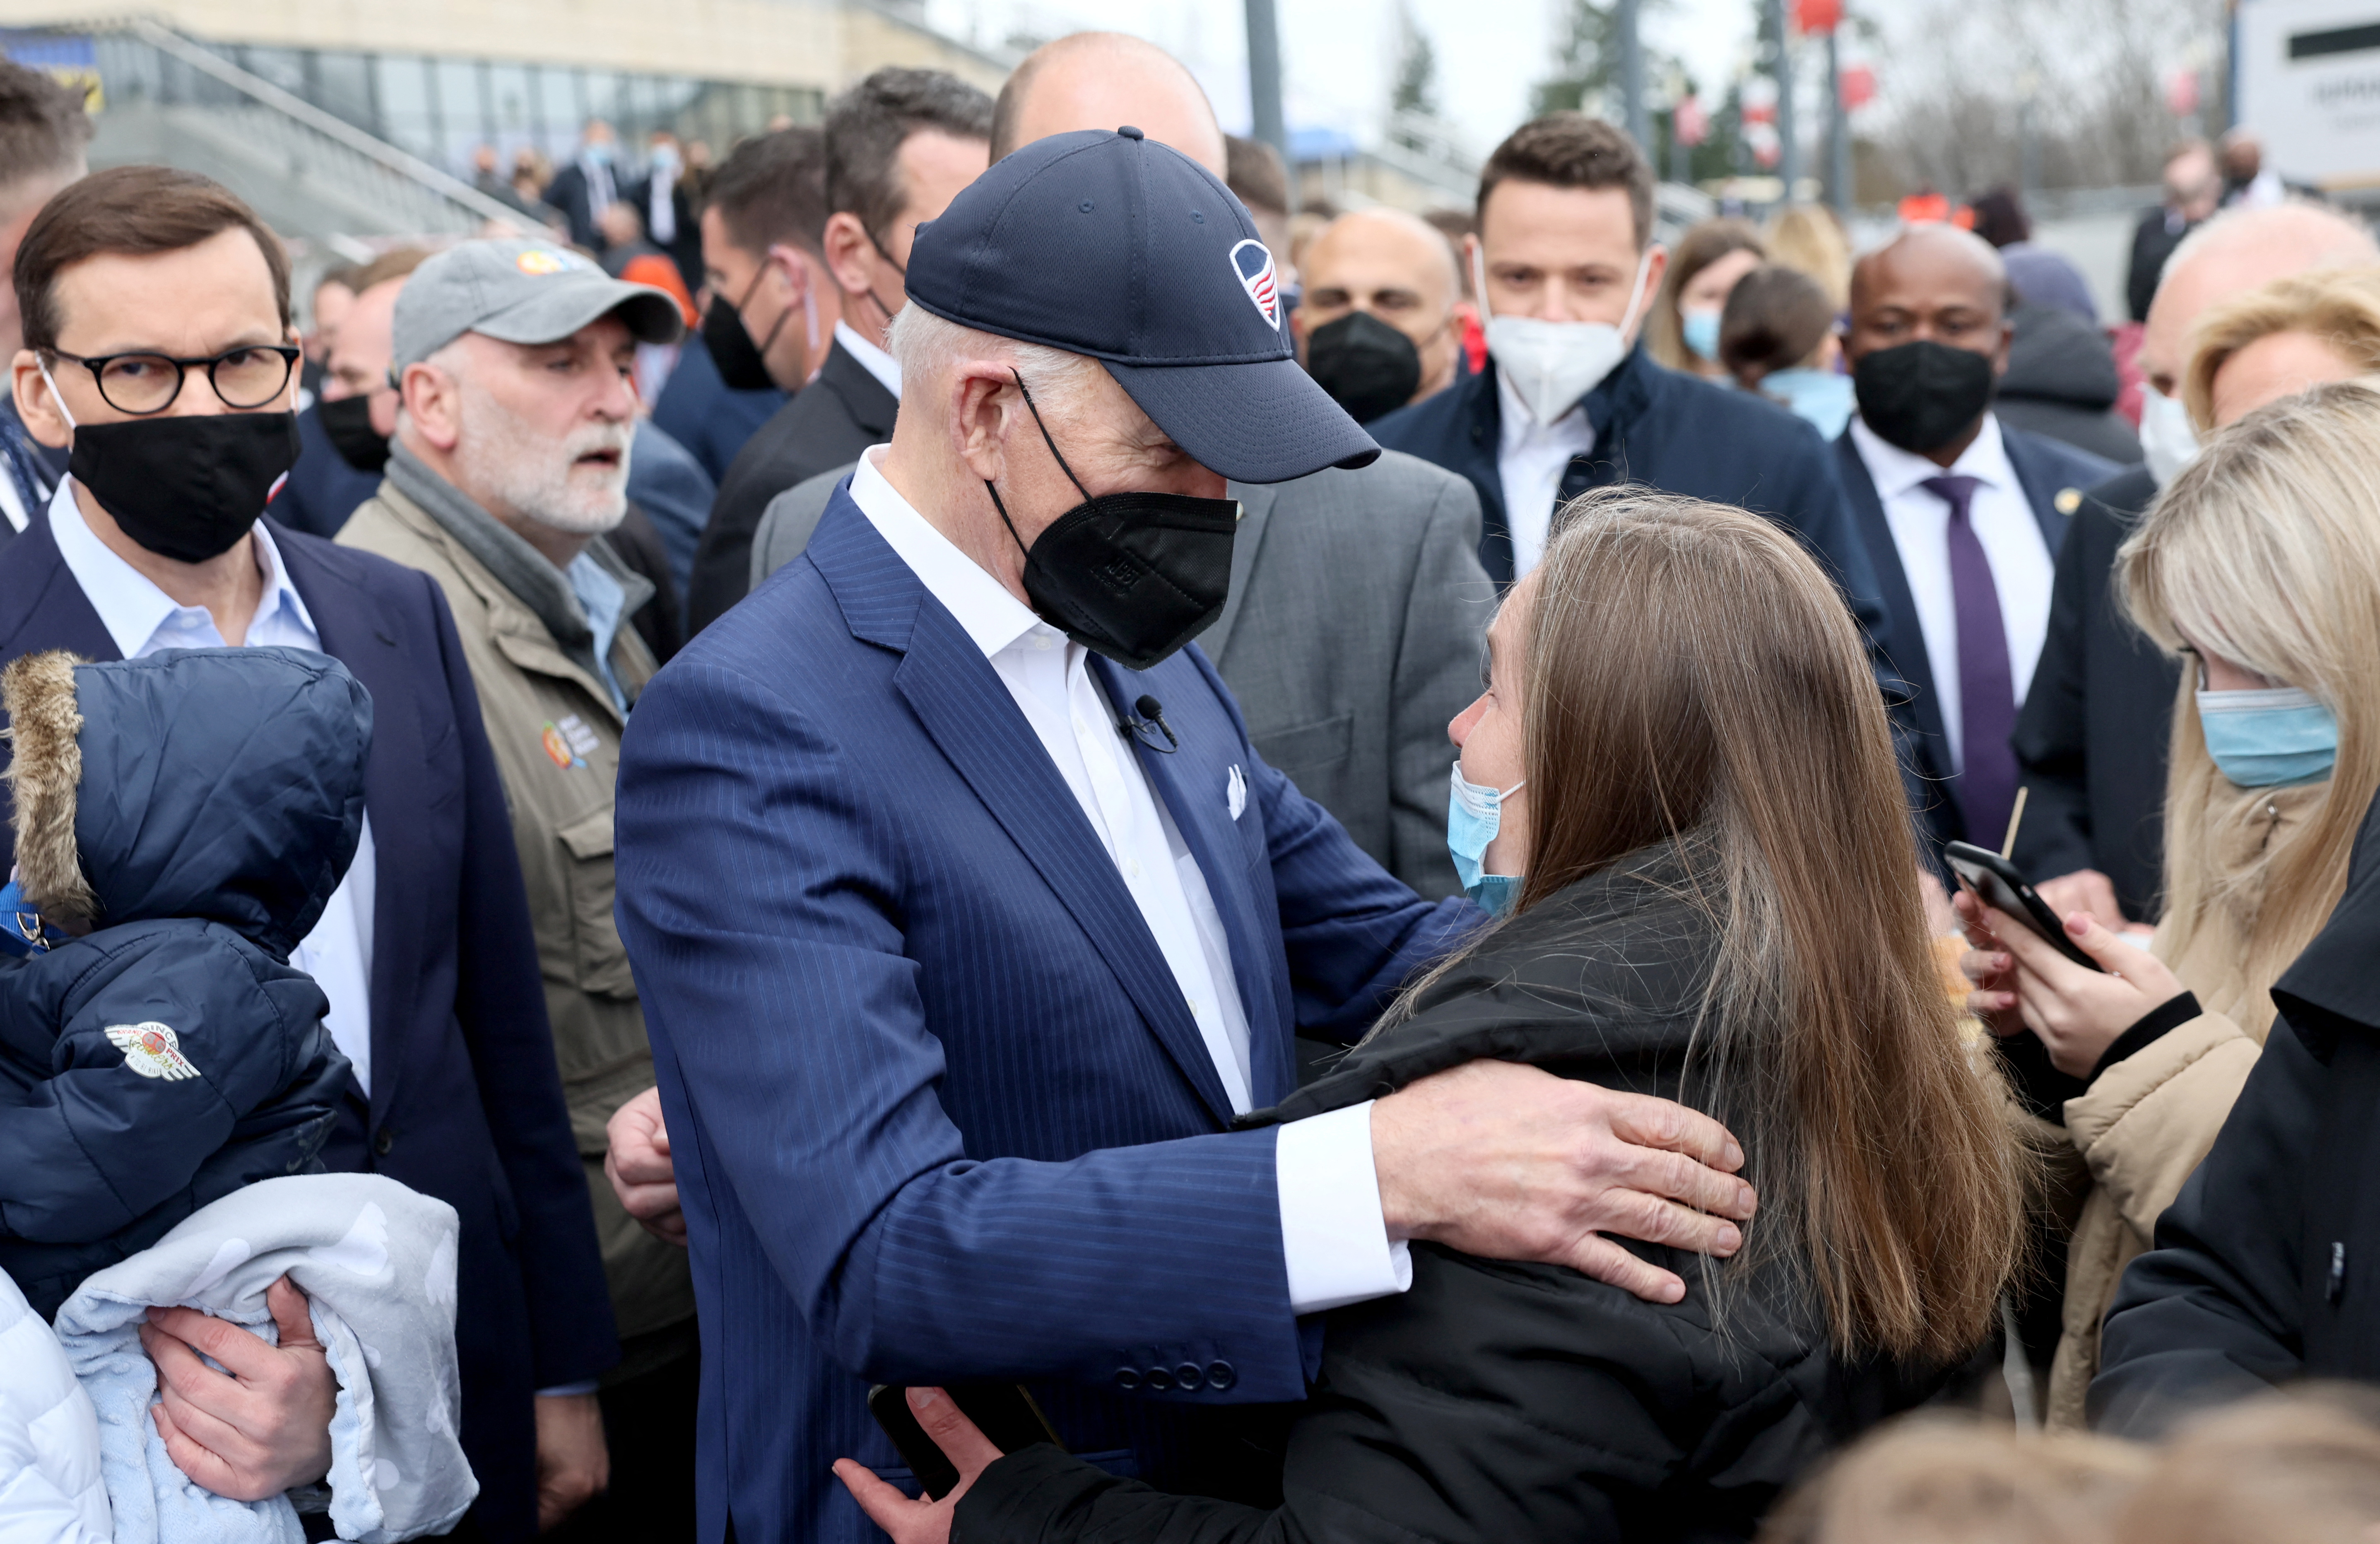 Biden conversa con una mujer en su visita a refugiados ucranianos en Polonia (REUTERS/Evelyn Hockstein)